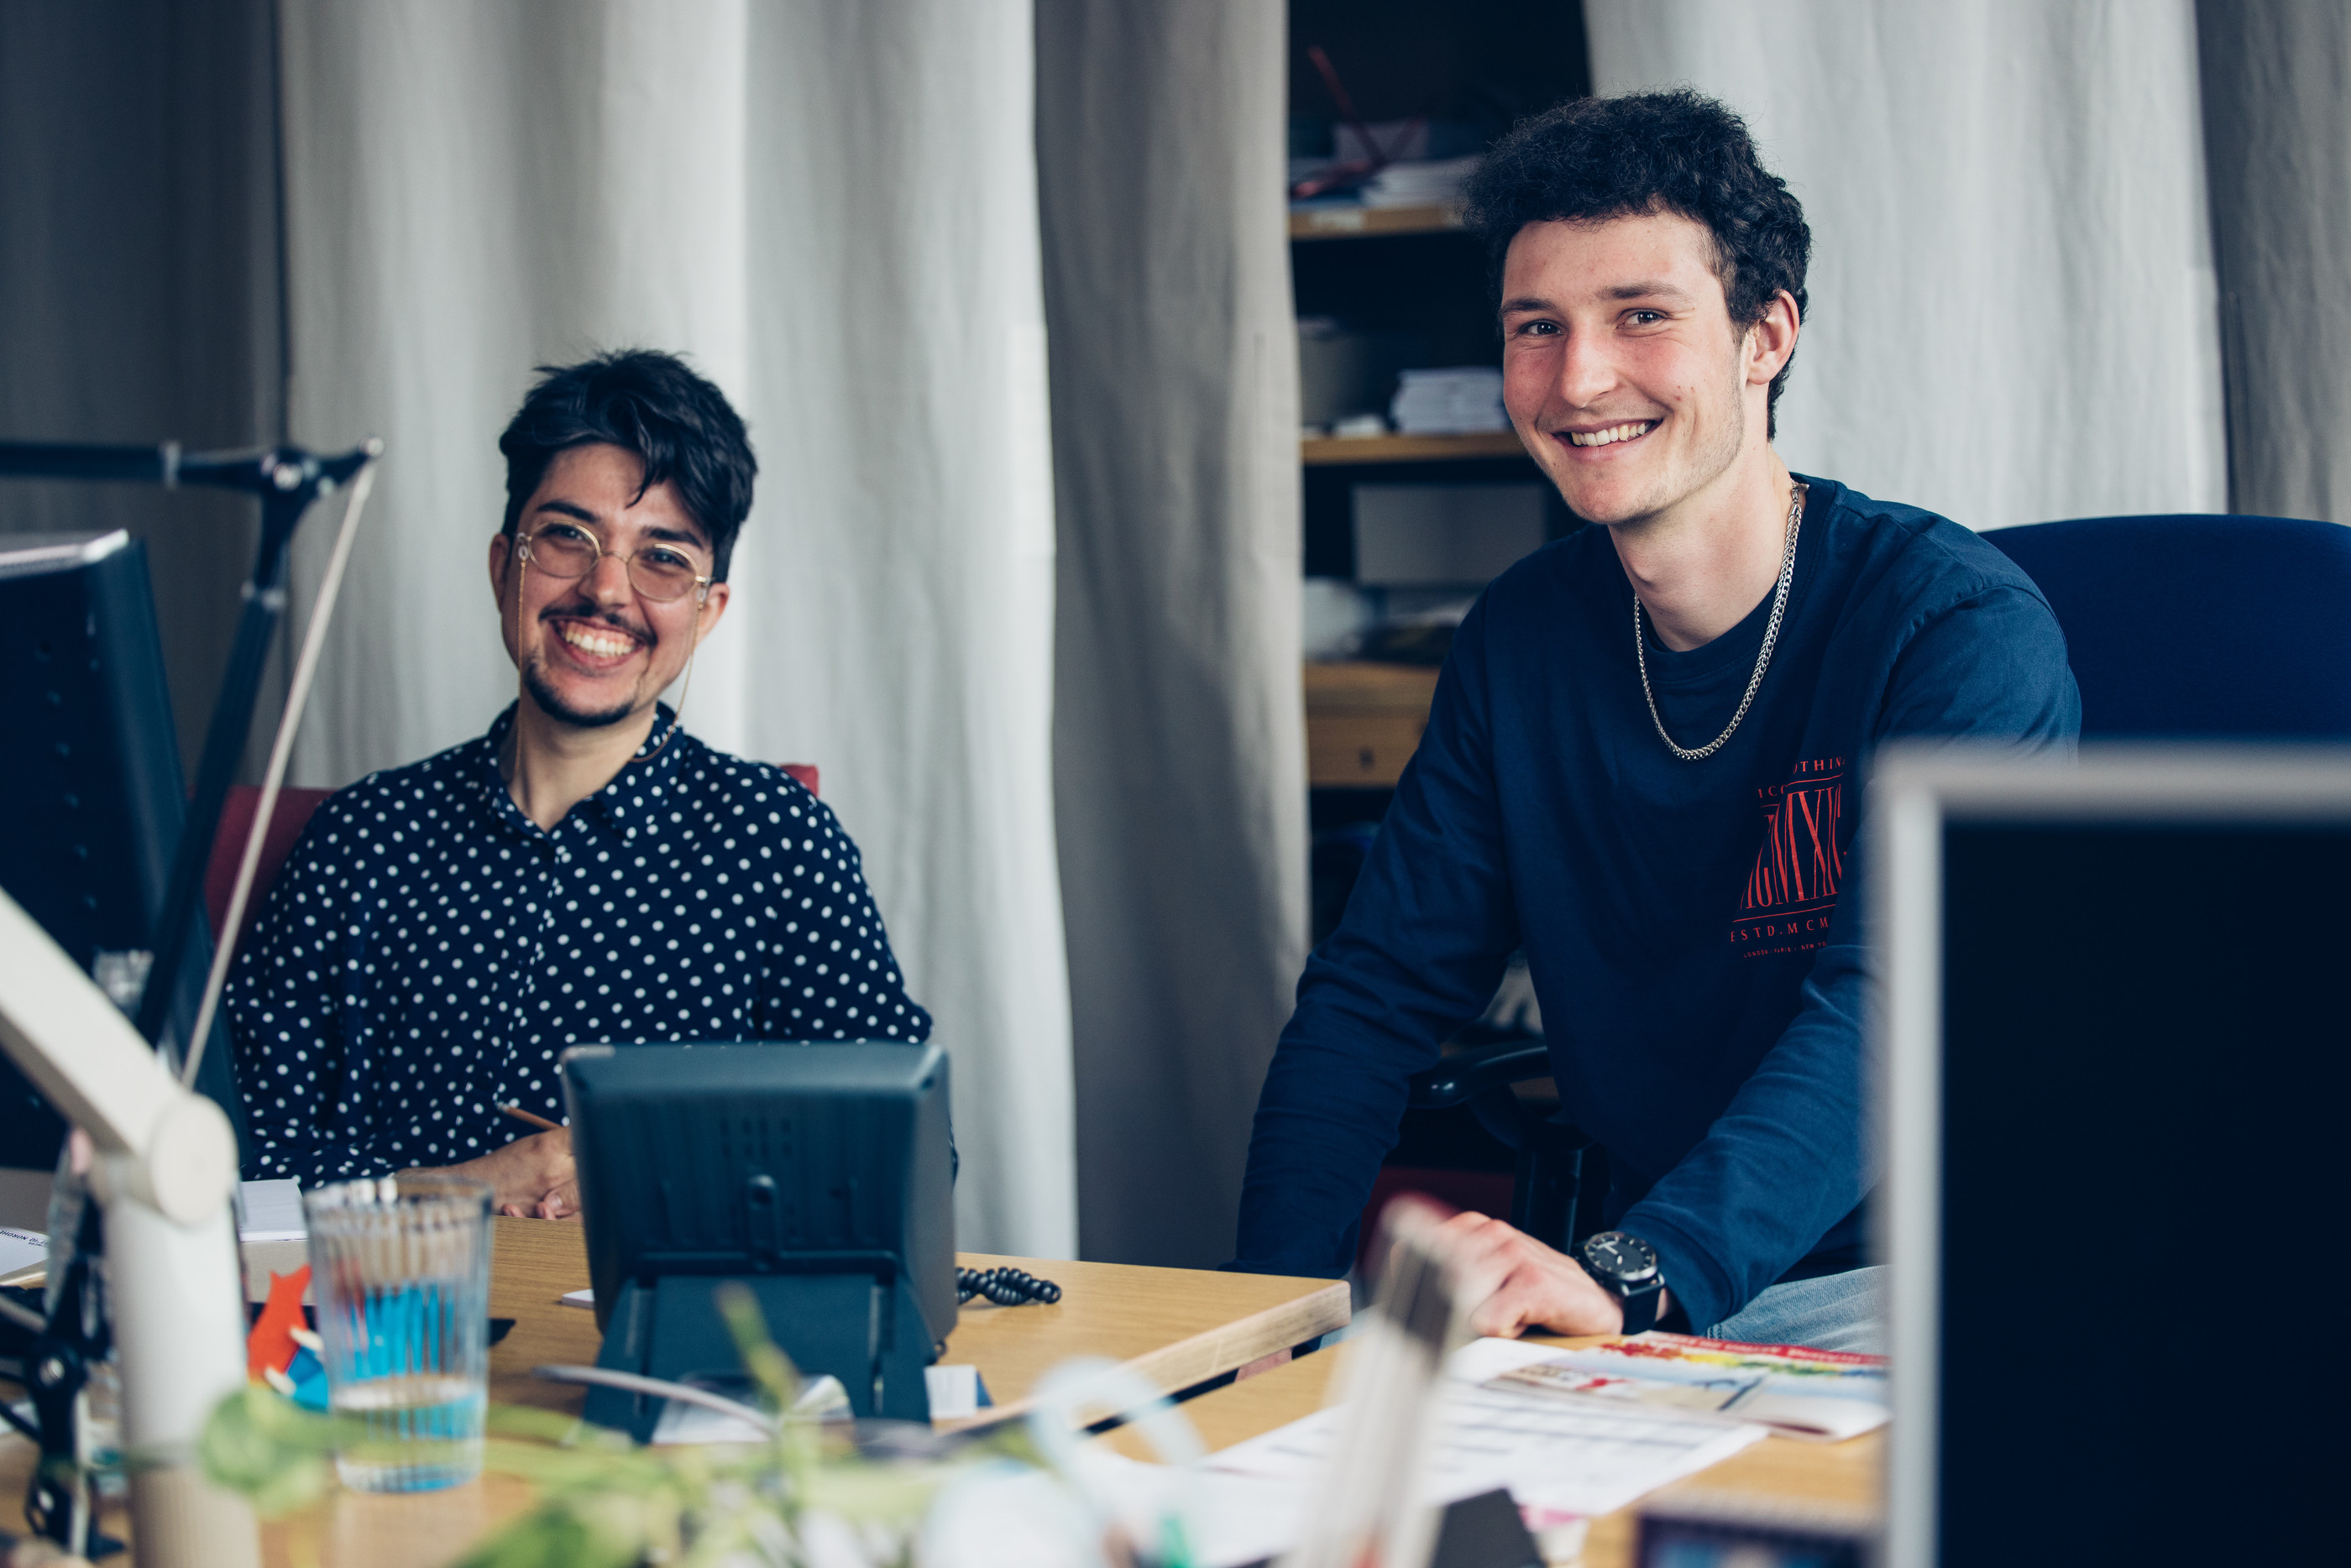 Lien Woywood (links) und Mats K. (rechts) sitzen an einem Schreibtisch in einem Büro und schauen lächelnd in die Kamera.